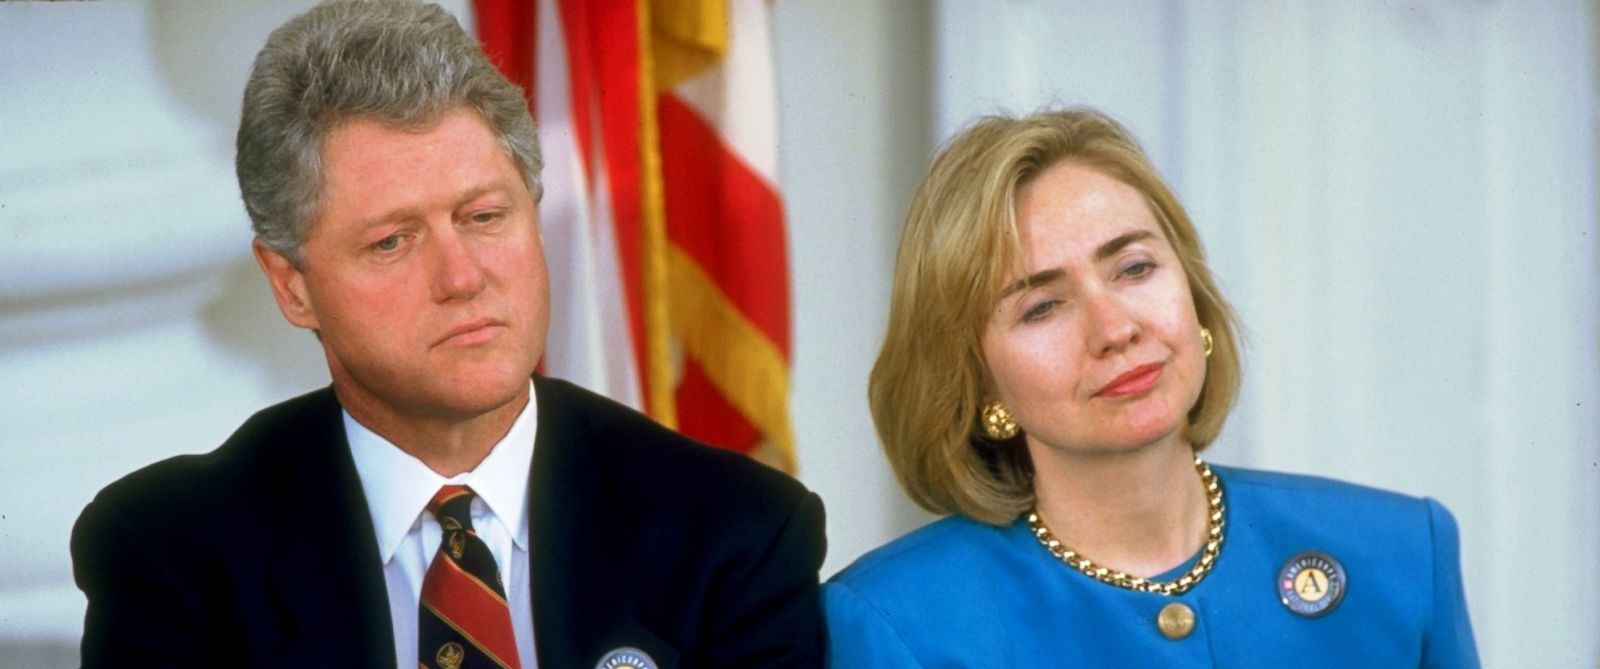 Hilary Clinton était la Première dame des Etats Unis quand son mari Bill Cllinton était à la Maison Blanche.